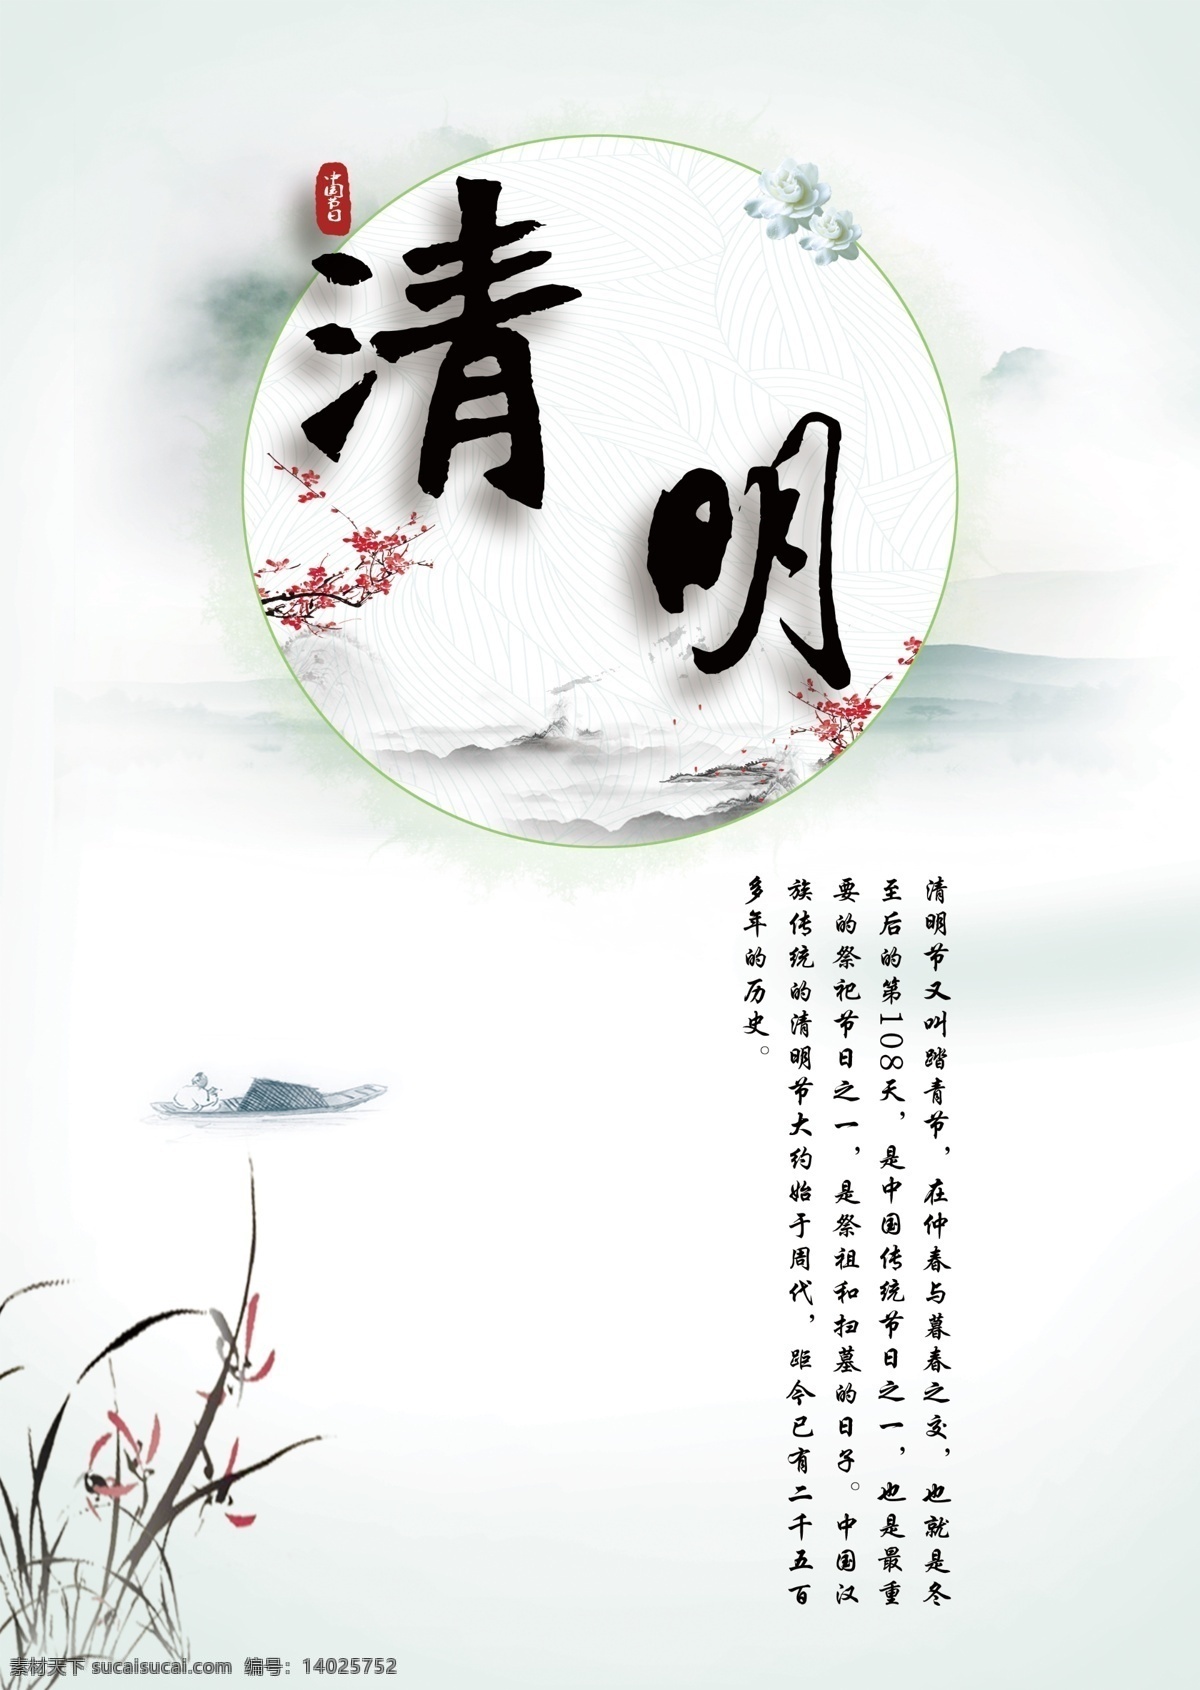 四月 清明 踏青 节日 海报 三月 传统节日 中国 中国传统节日 中国传统文化 山川 水墨 梅花 花朵